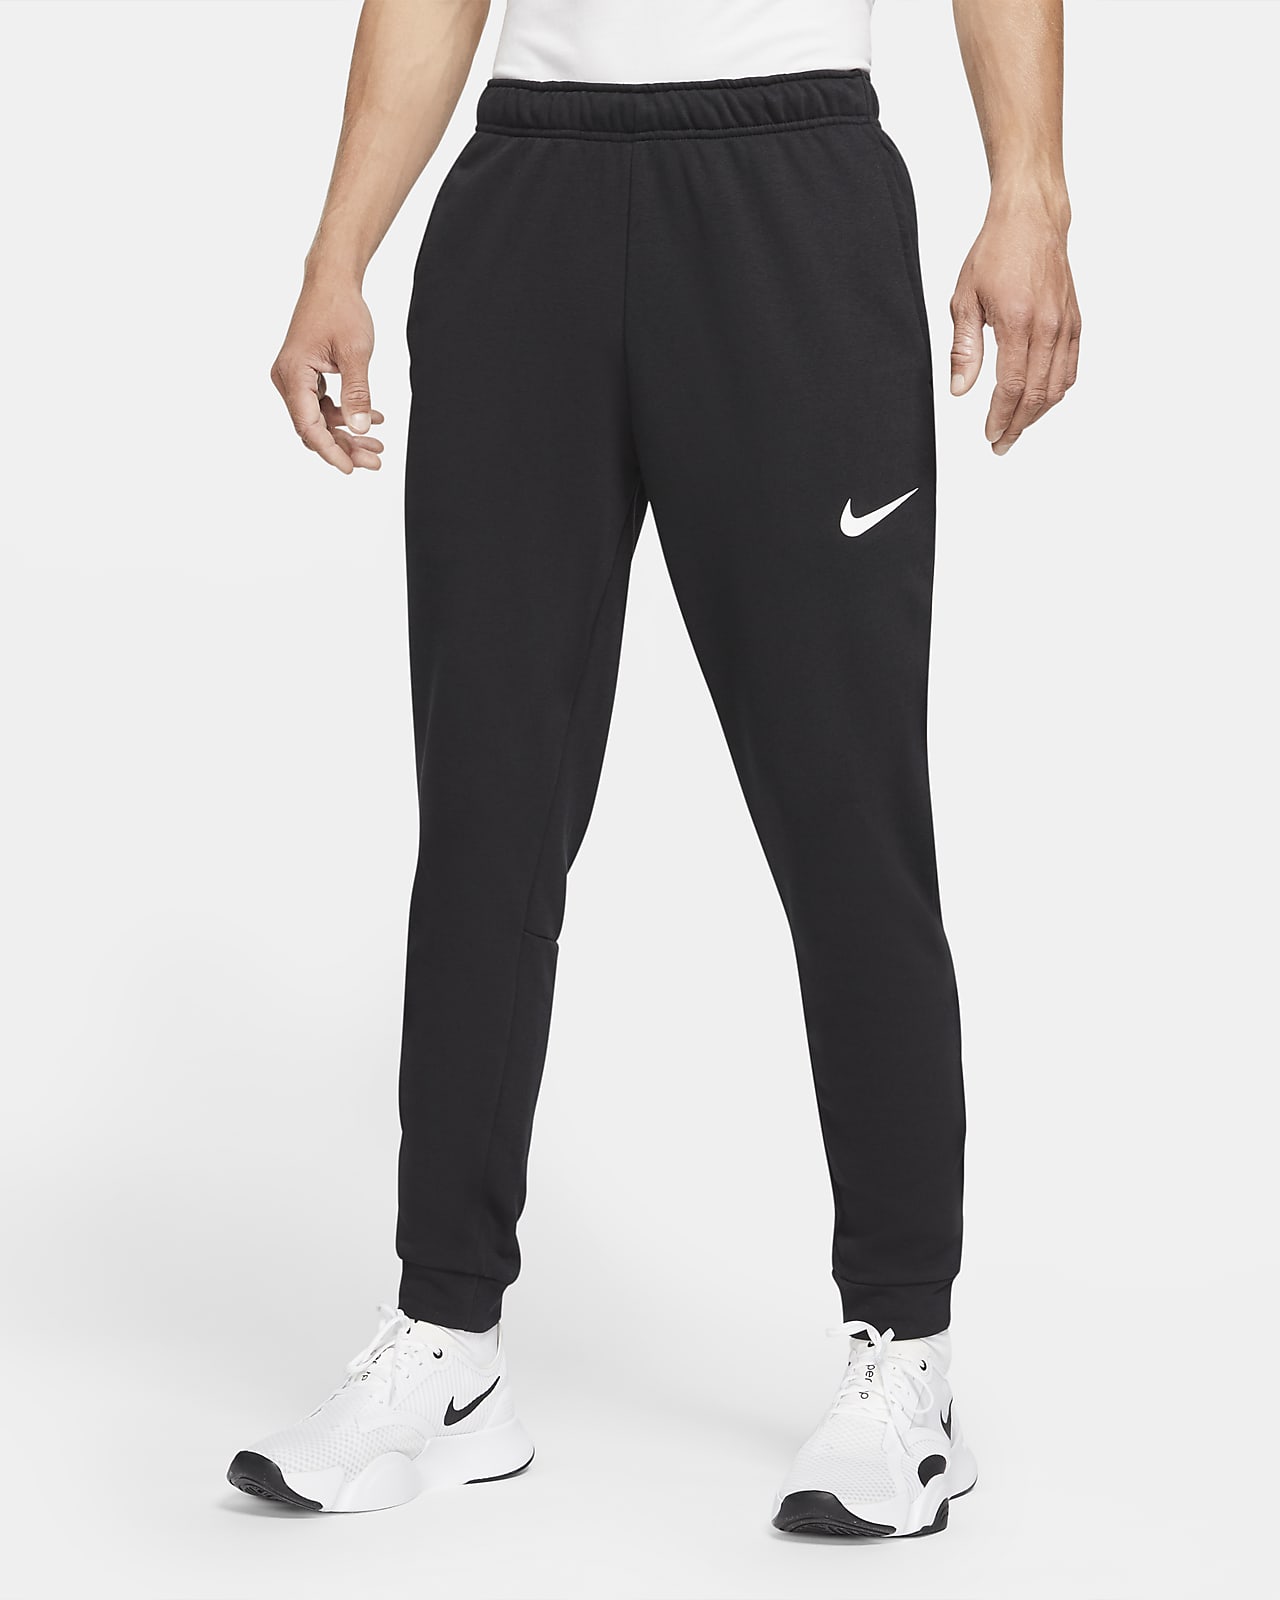 Мужские брюки с зауженным книзу кроем для тренинга Nike Dri-FIT